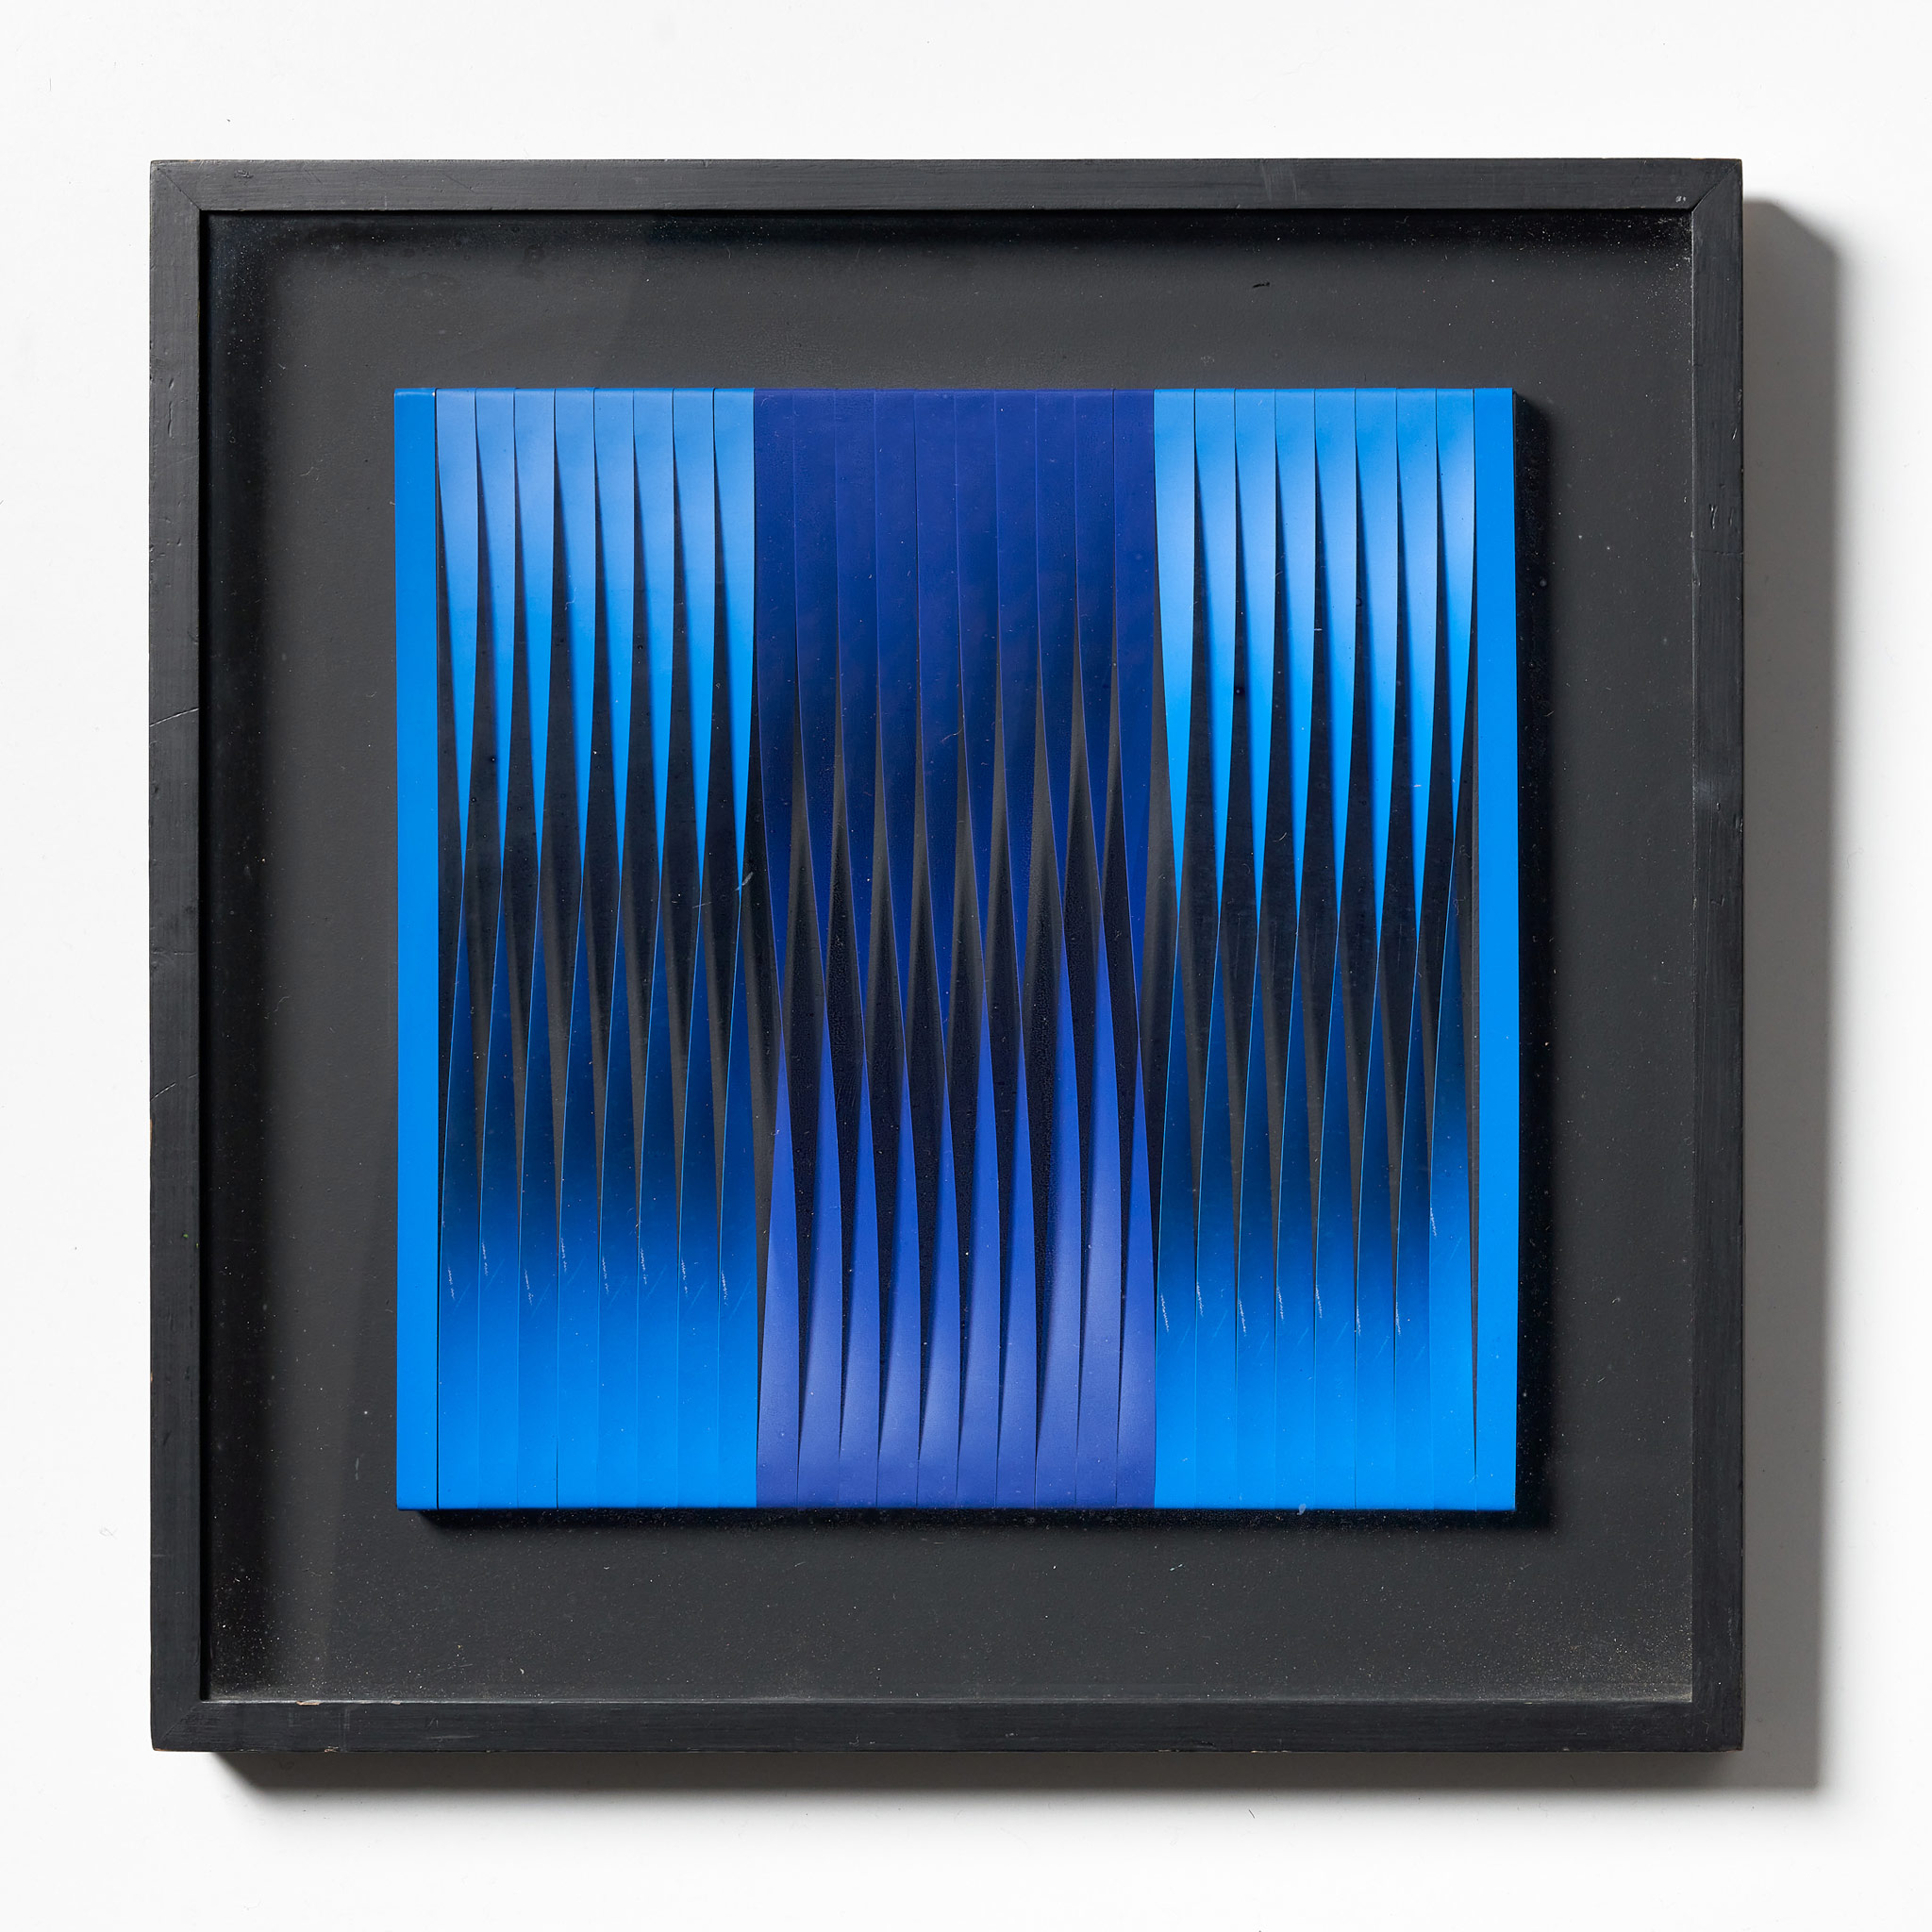 Walter Leblanc (1932 – 1986), Torsions, 1968 – 1972, Bandes en latex, toile dans une boîte noire. Dimensions : 40 x 40 cm. Coll. Privée.